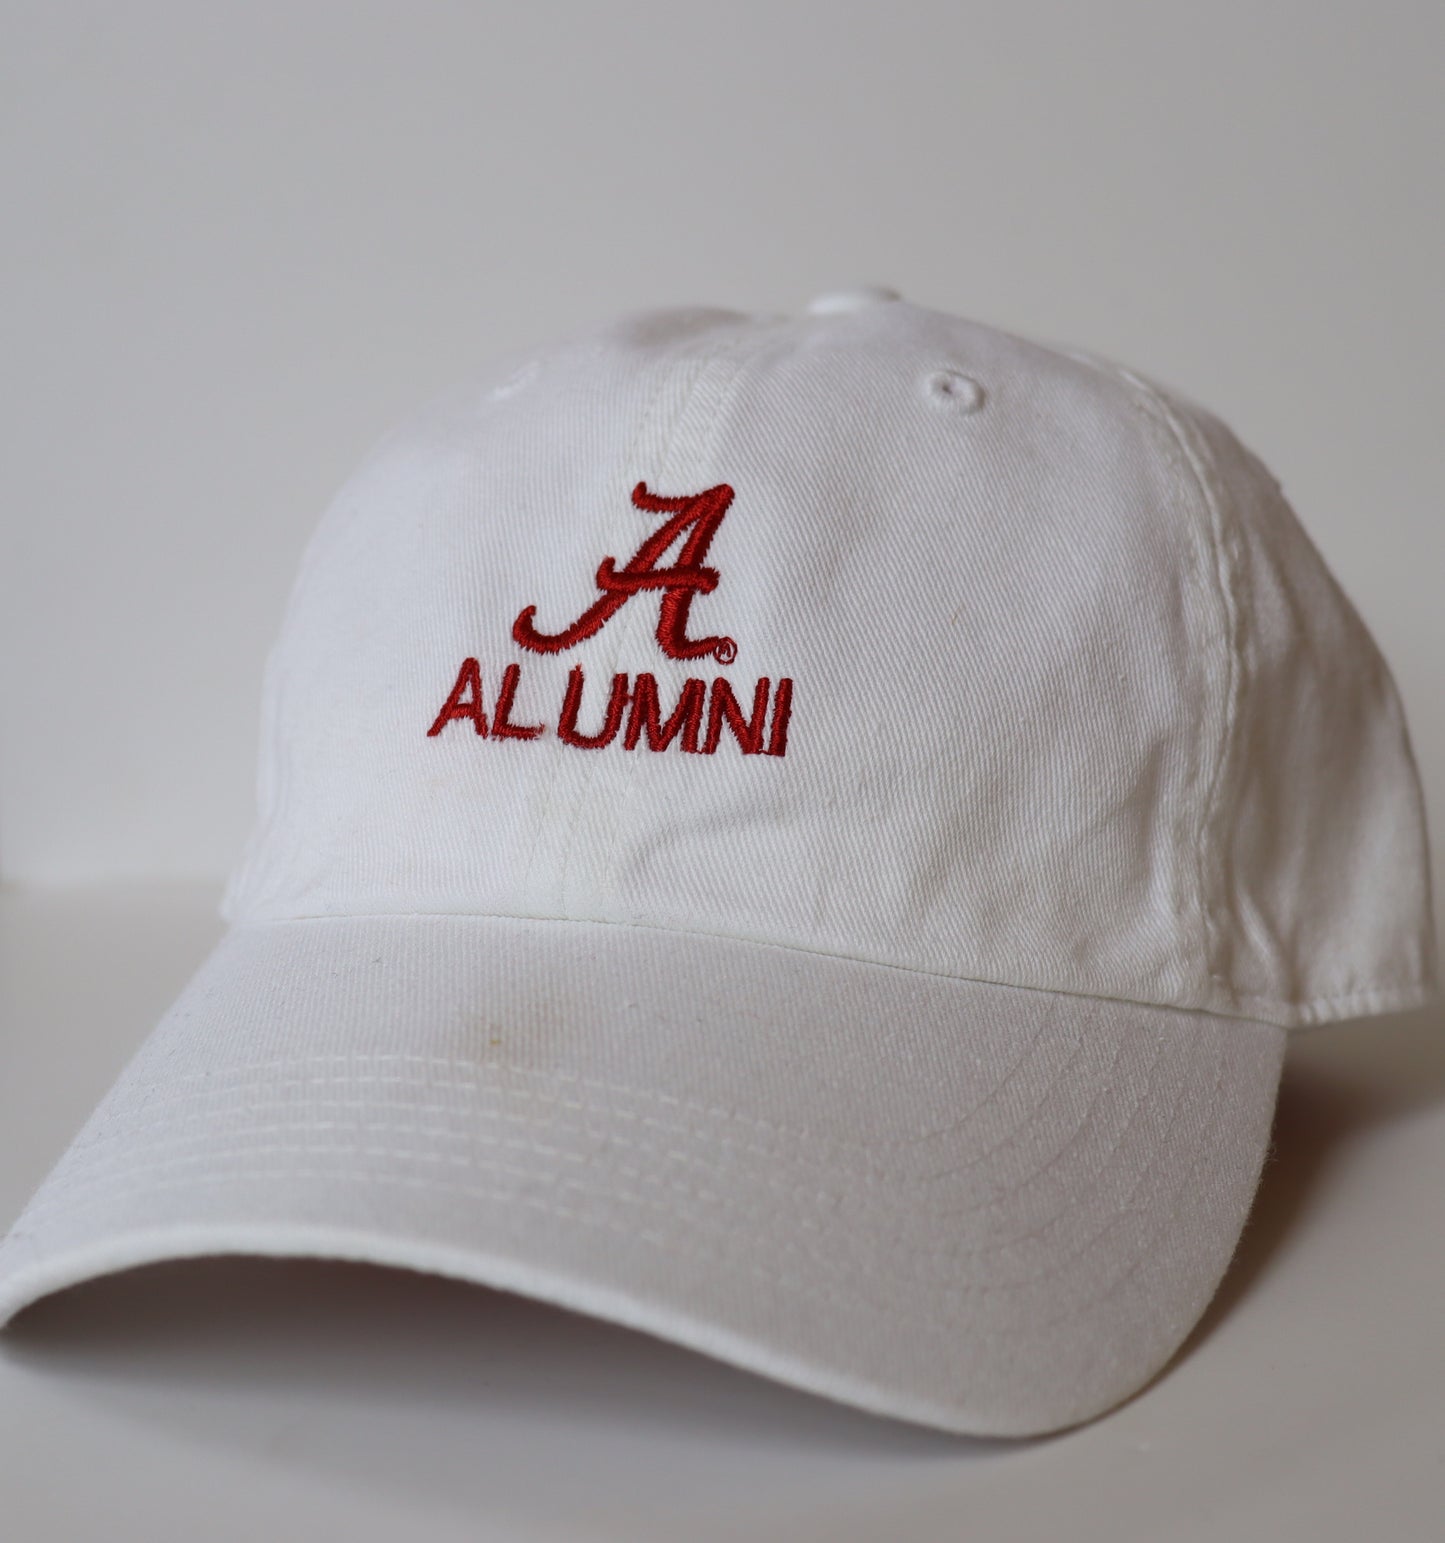 The Shirt Shop "A/Alumni" Hat (5 Colors)